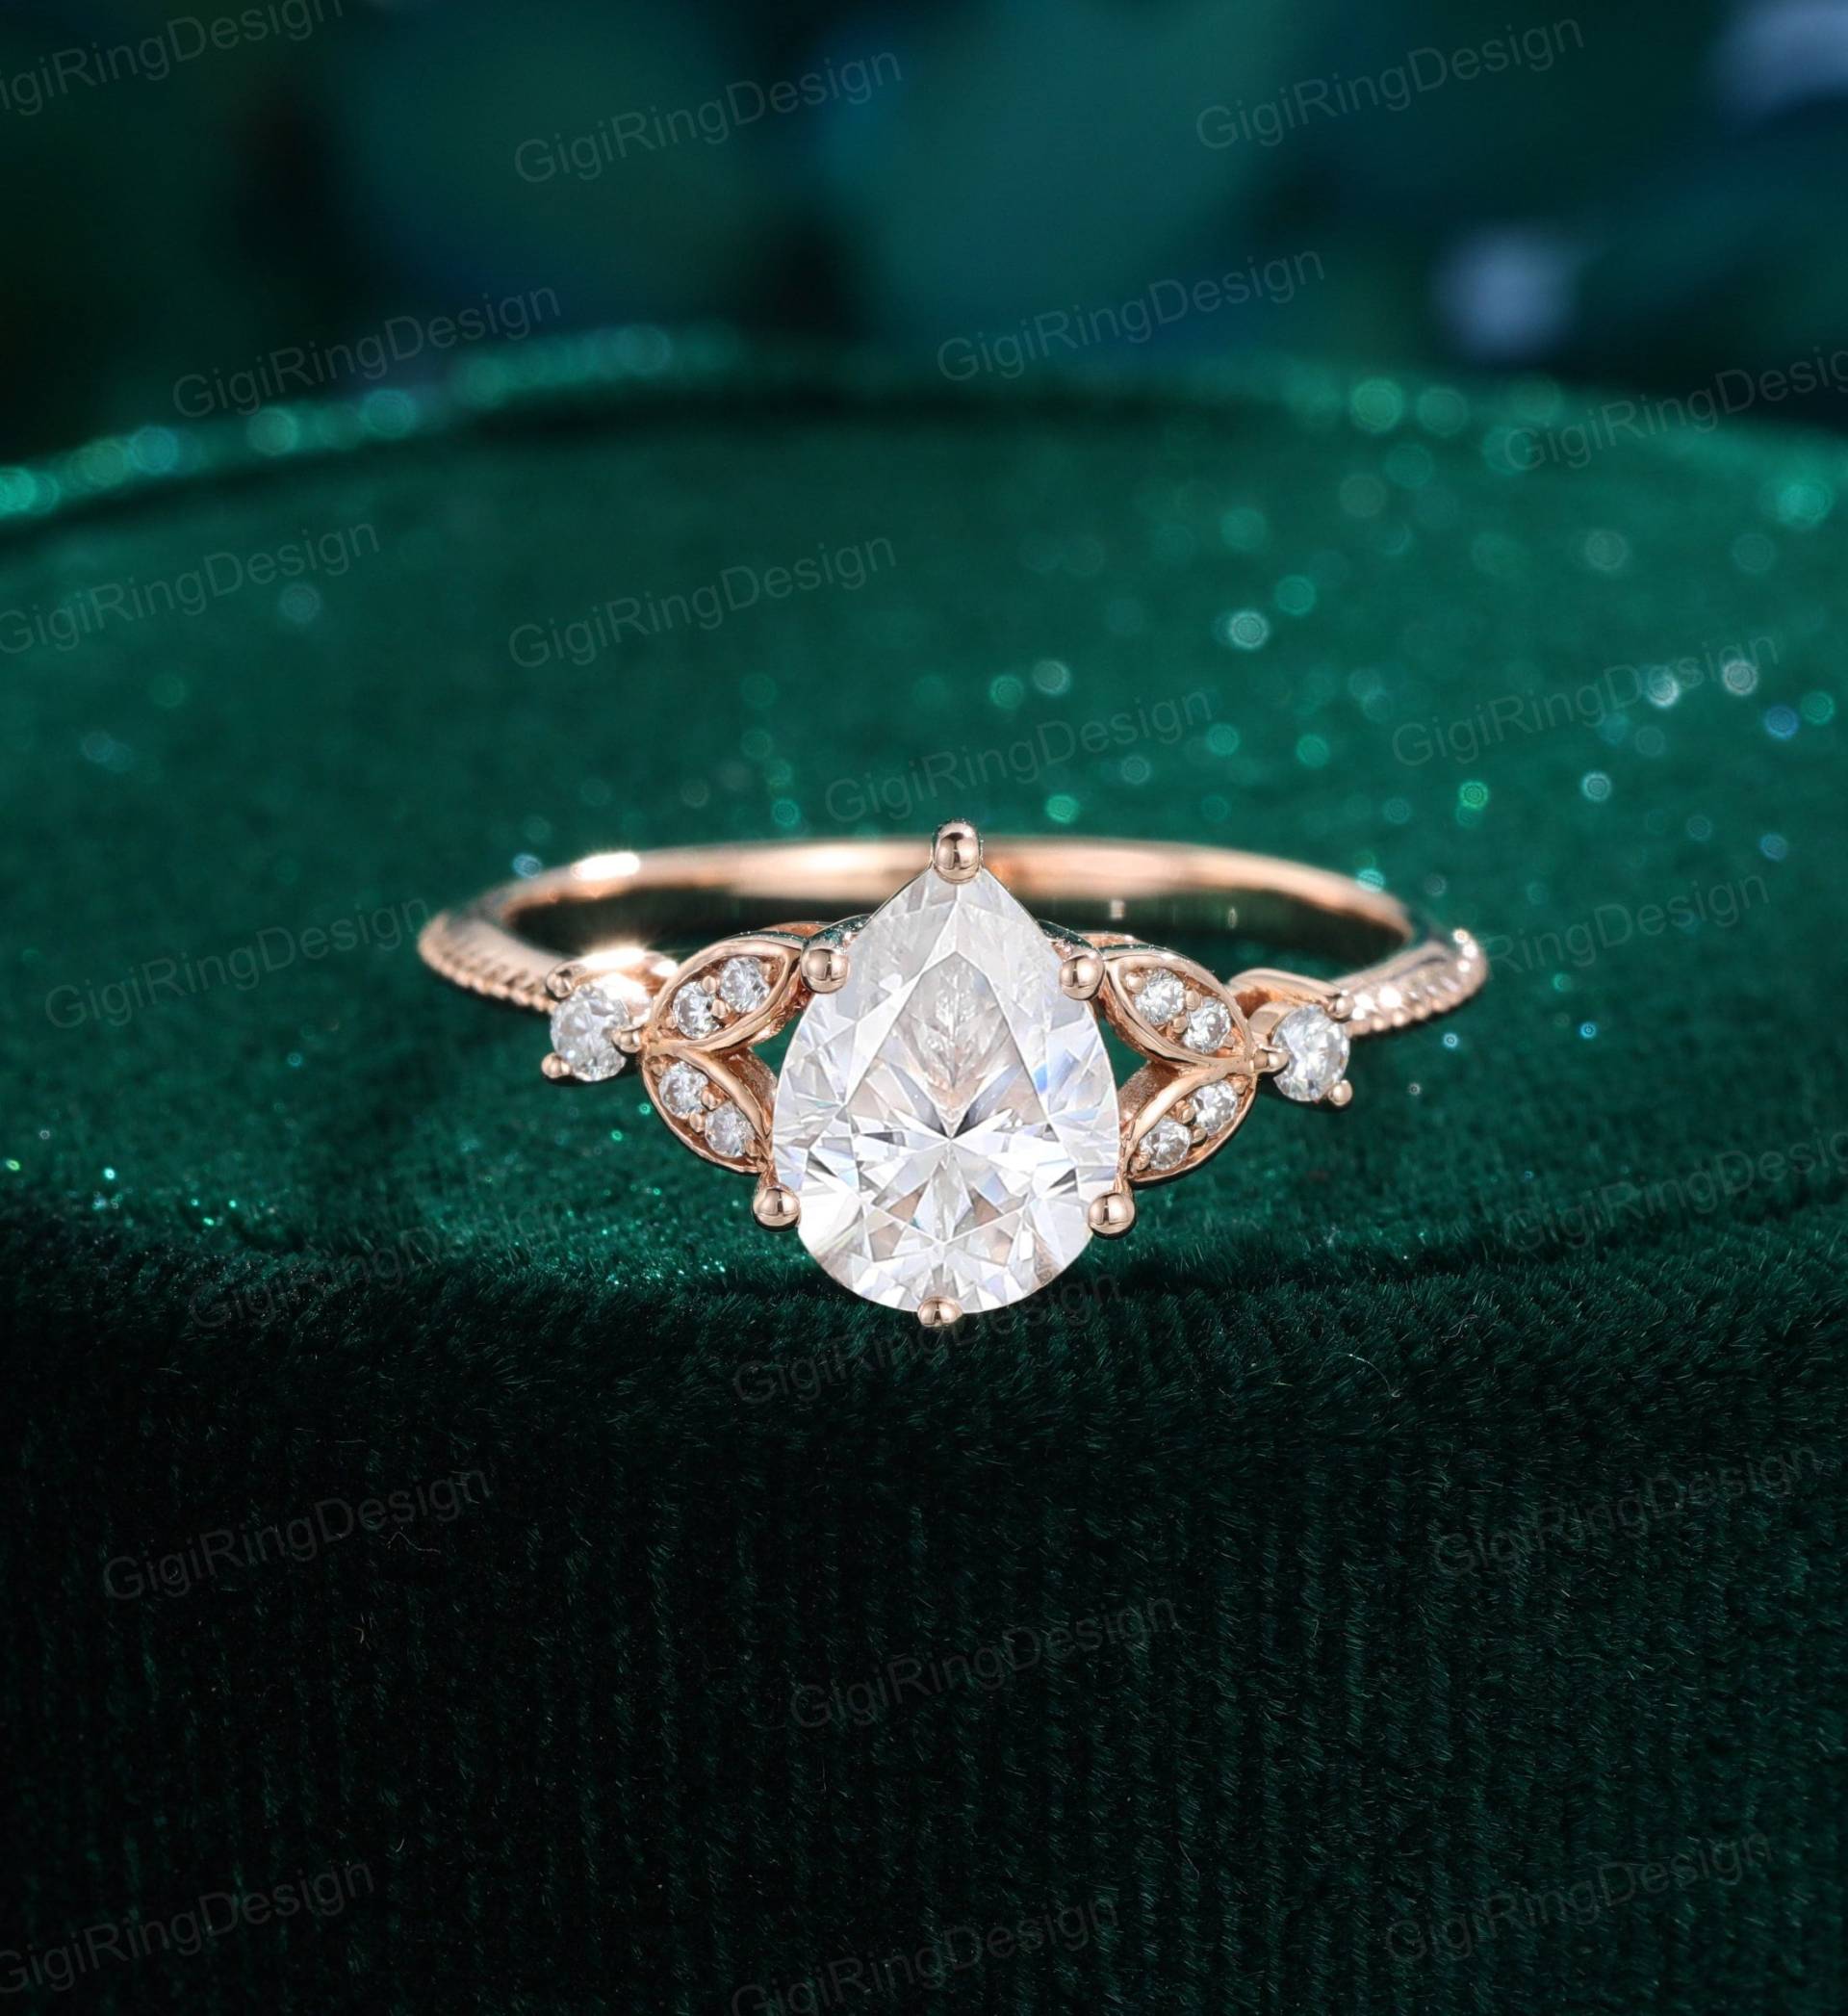 Einzigartiger Birnenförmiger Moissanit Verlobungsring Frauen Vintage Roségold Diamant Art Deco Ring Braut Versprechen Jahrestag von GigiRingDesign